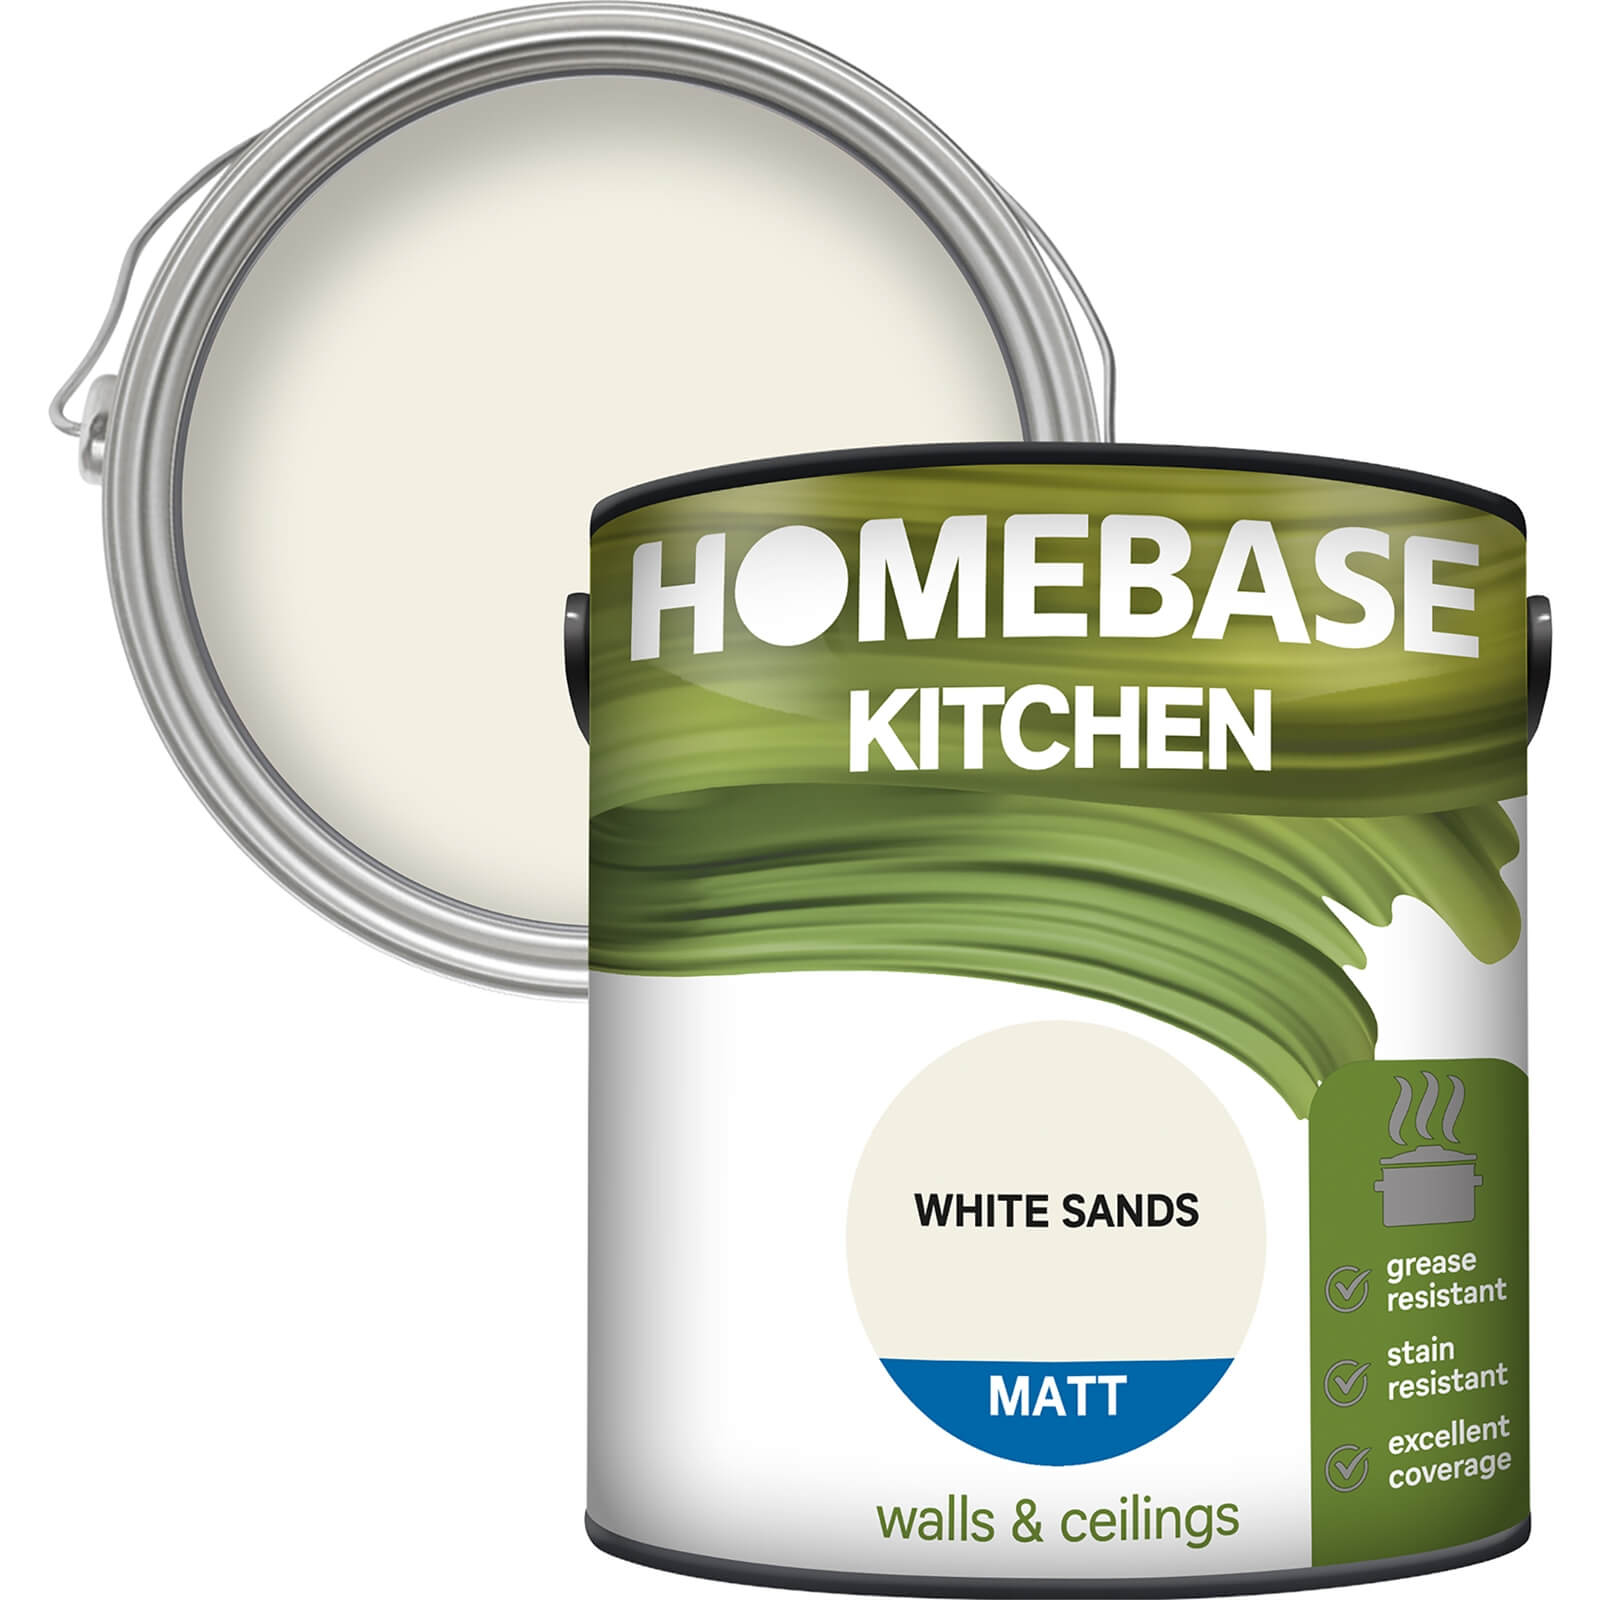 Homebase Kitchen Matt Paint - White Sands 2.5L